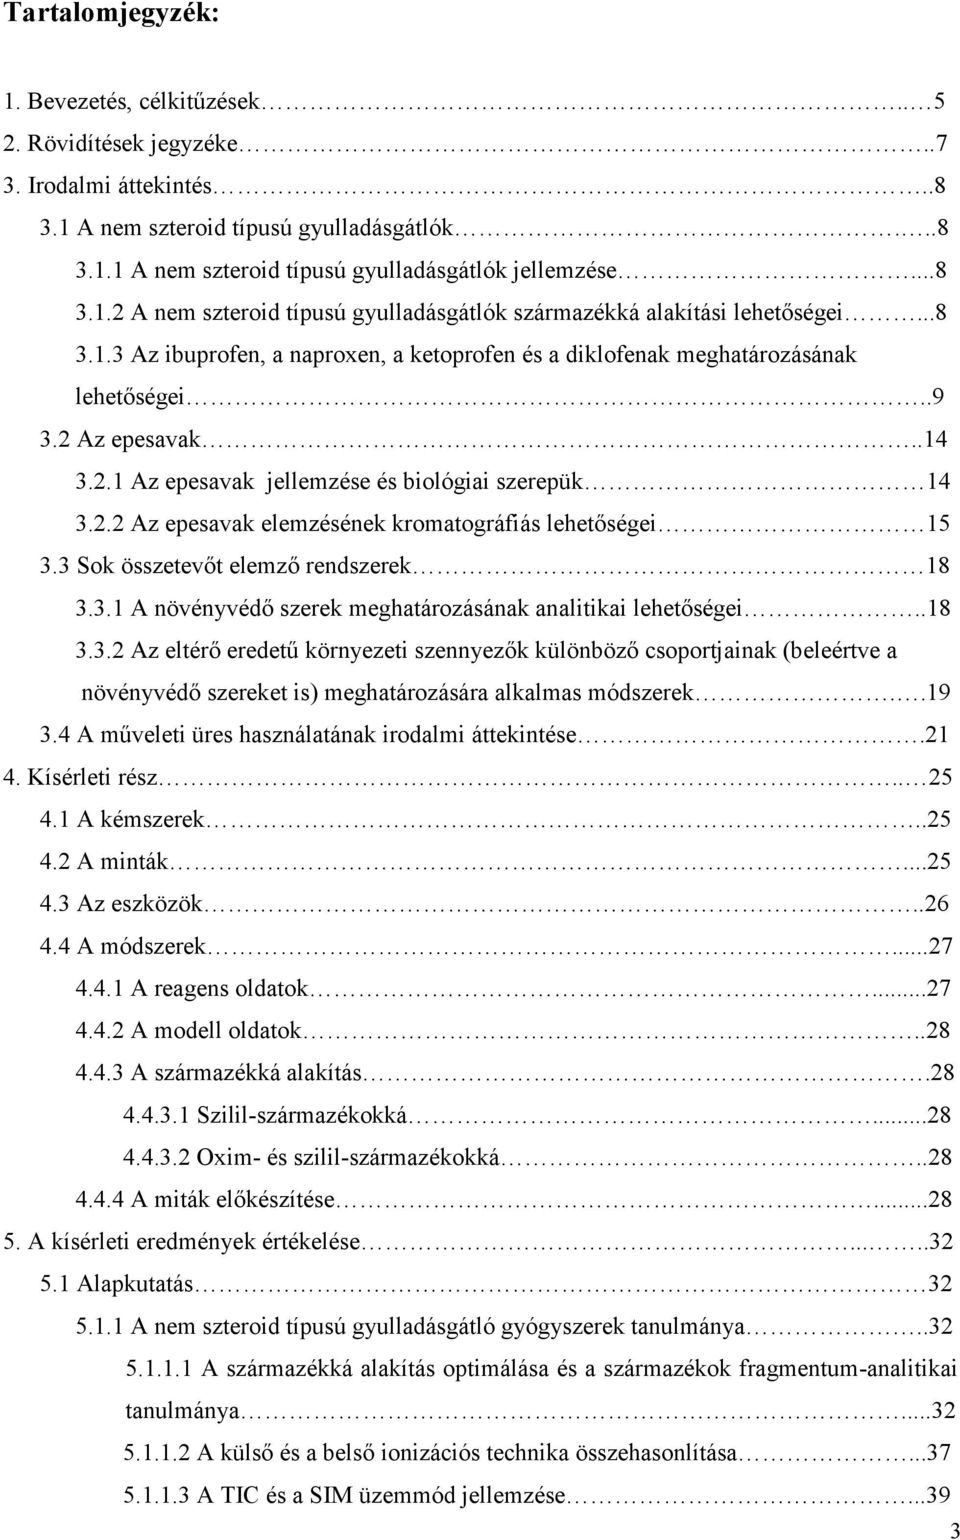 2.1 Az epesavak jellemzése és biológiai szerepük 14 3.2.2 Az epesavak elemzésének kromatográfiás lehetıségei 15 3.3 Sok összetevıt elemzı rendszerek 18 3.3.1 A növényvédı szerek meghatározásának analitikai lehetıségei.